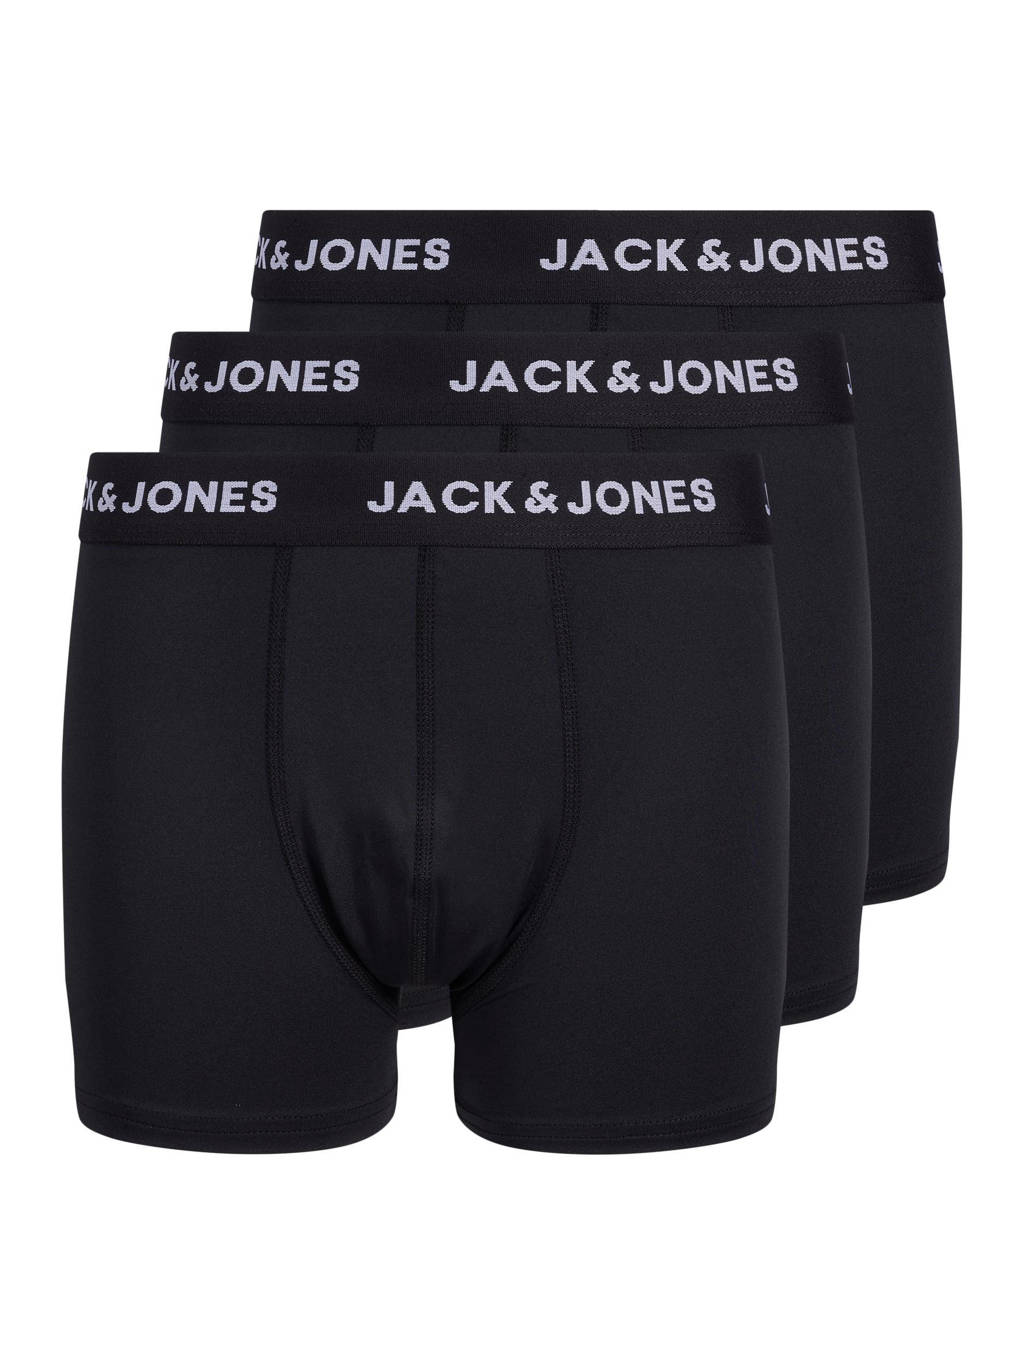 JACK & JONES JUNIOR   boxershort - set van 3 zwart, Zwart